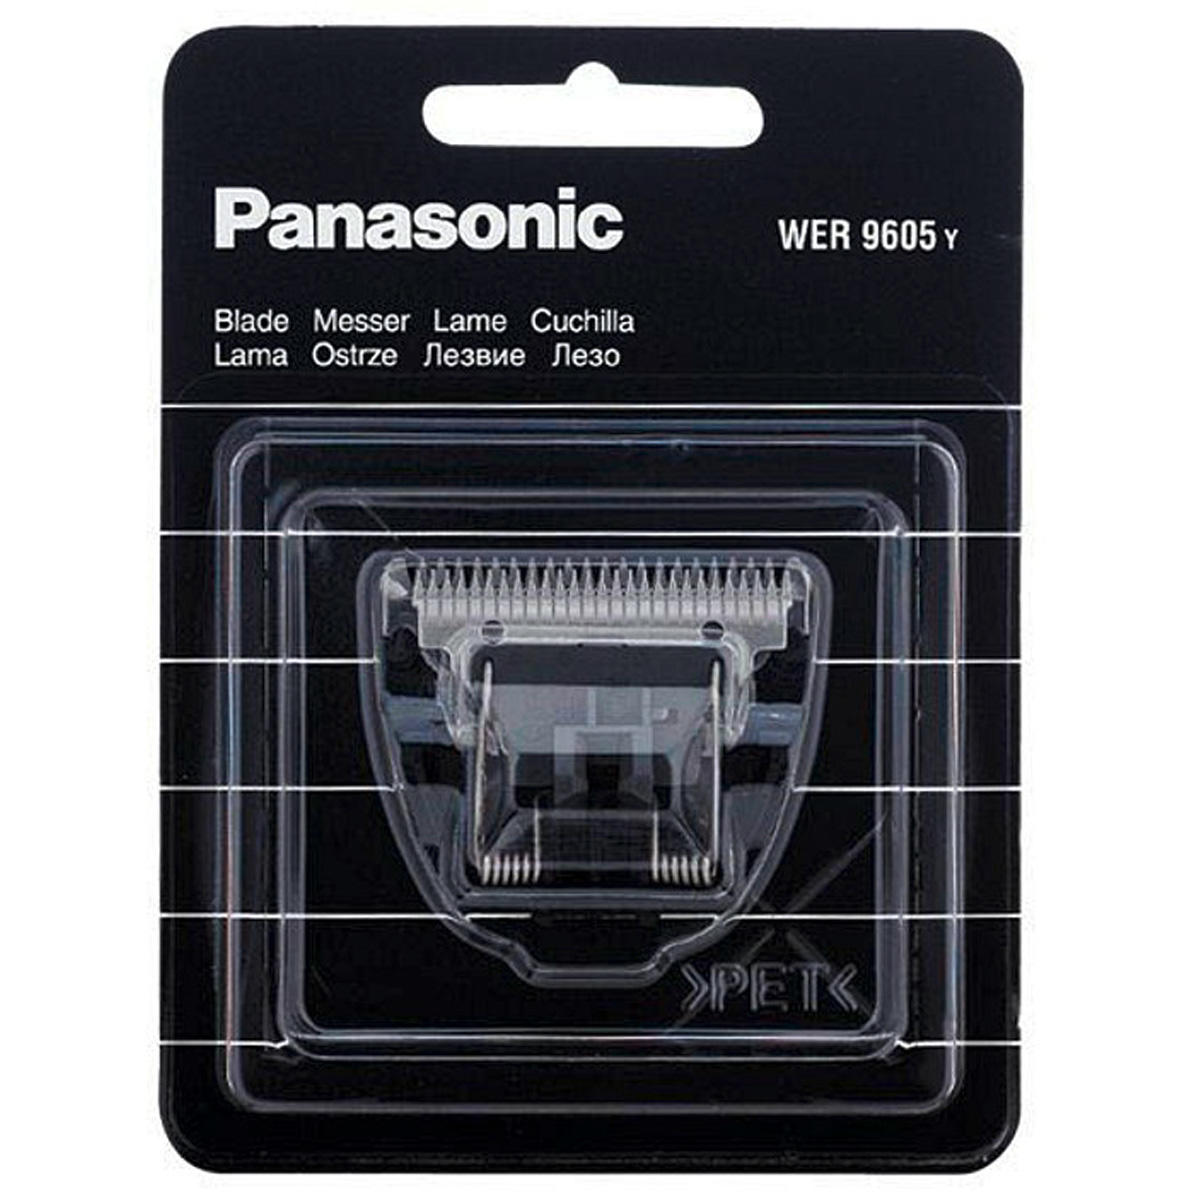 Panasonic Shaving head for ER-GB61  - 1